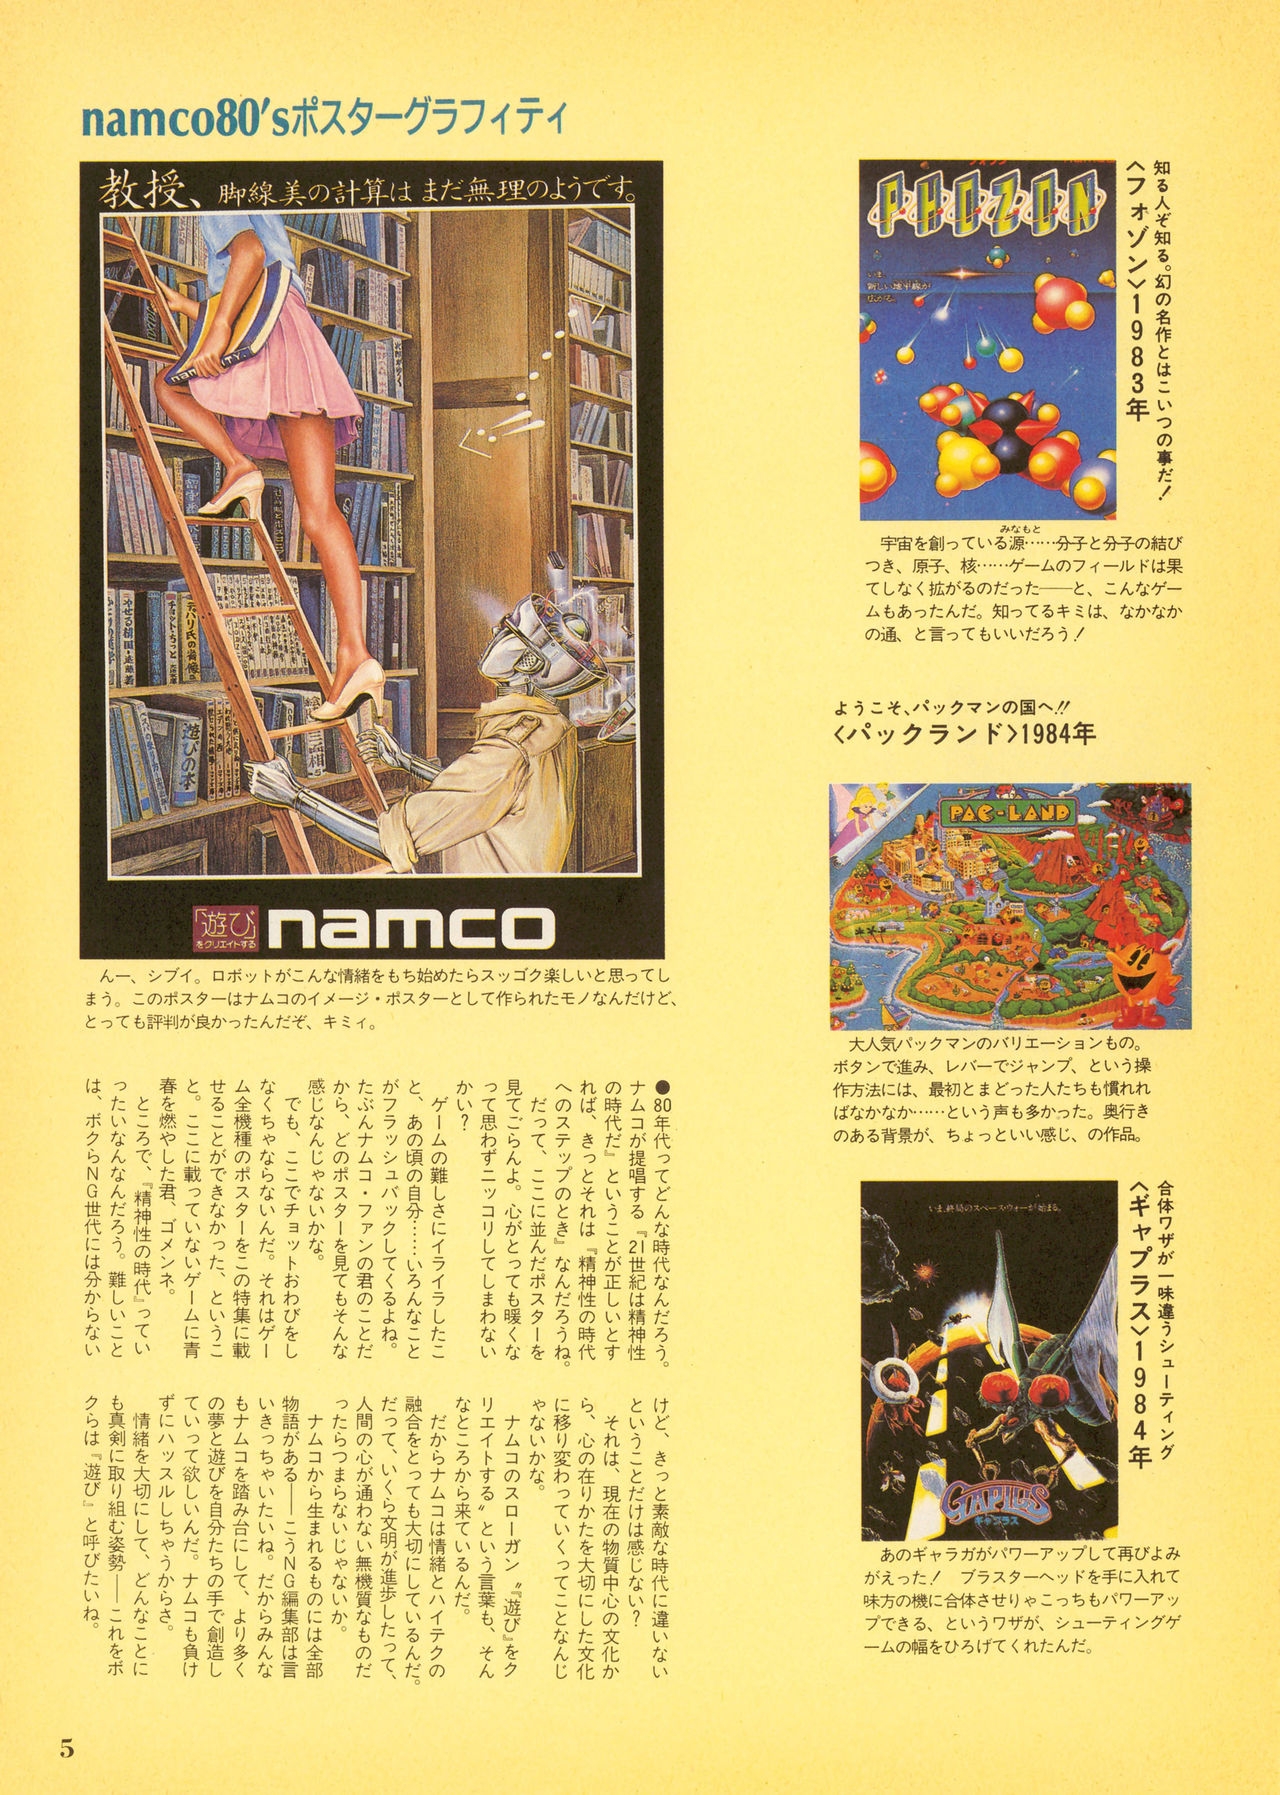 NG Namco Community Magazine 07 4